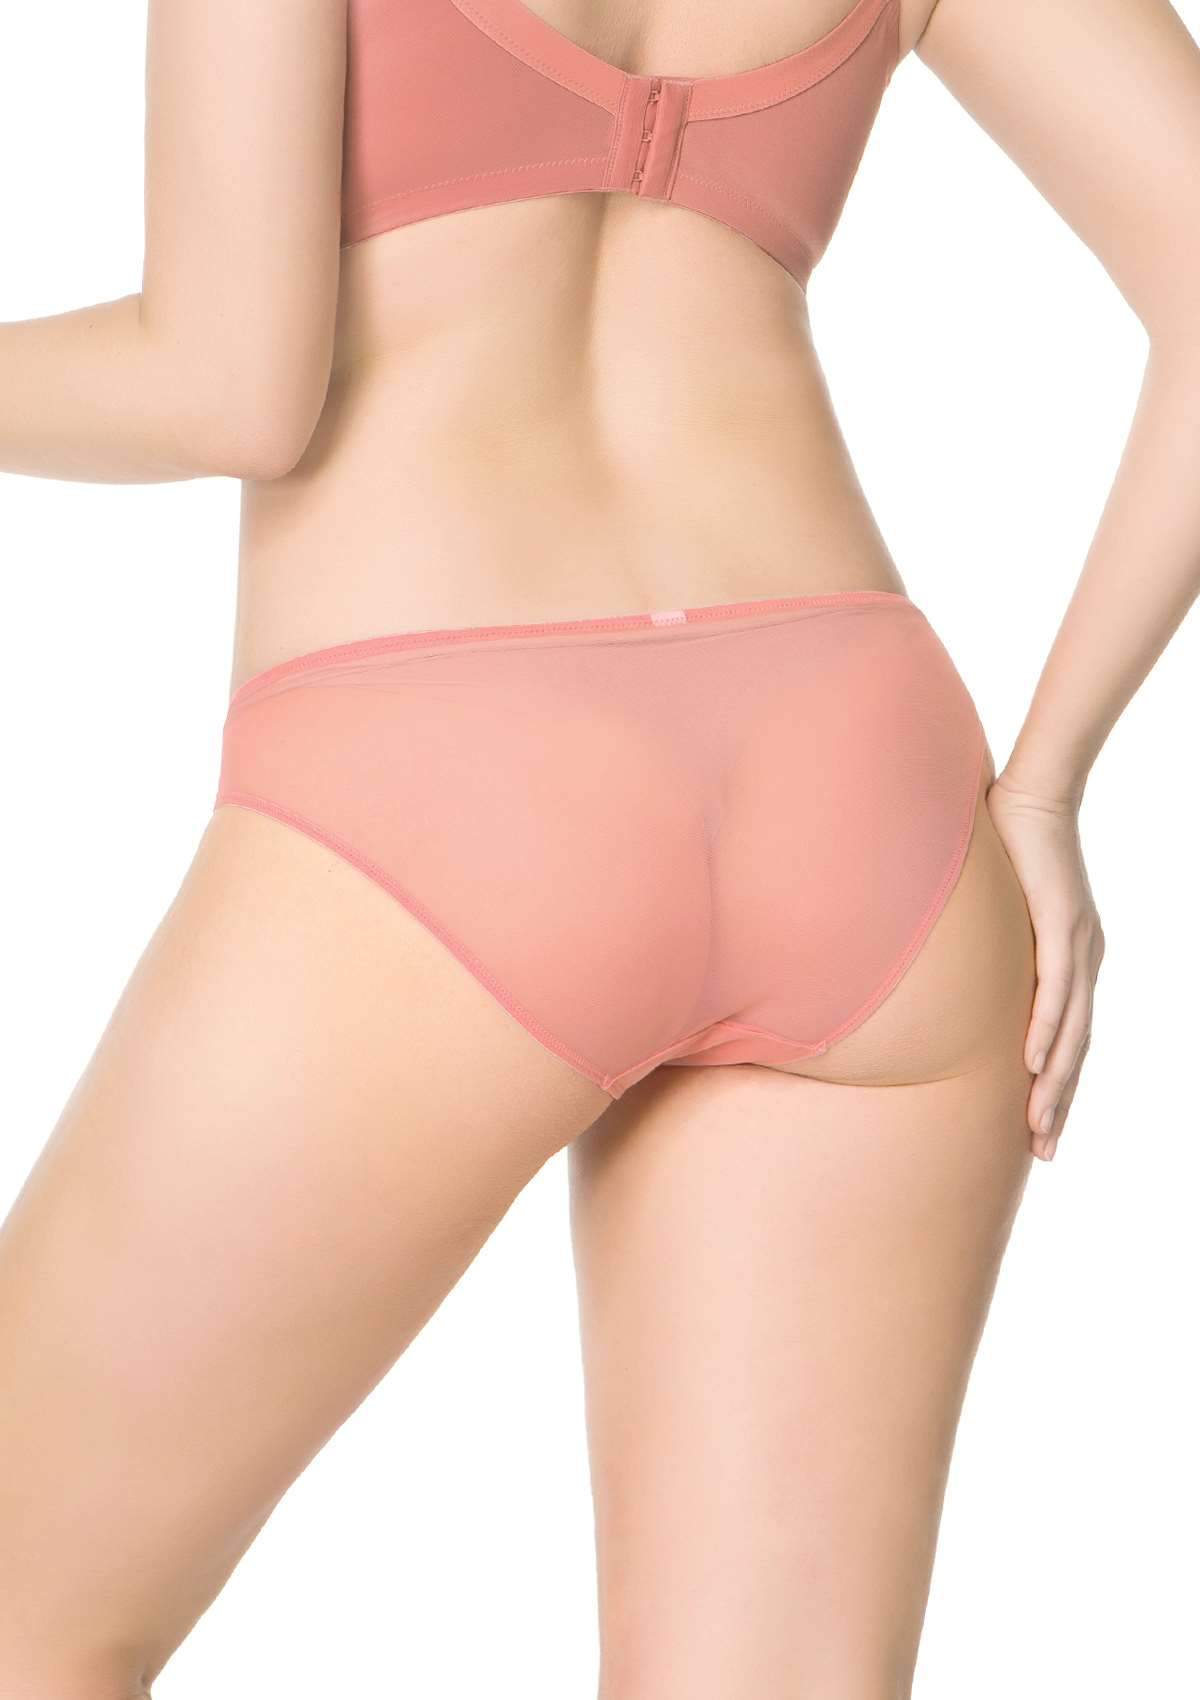 HSIA Plaid Lace Bikini Panties 3 Pack - L / Black+Yellow+Pink